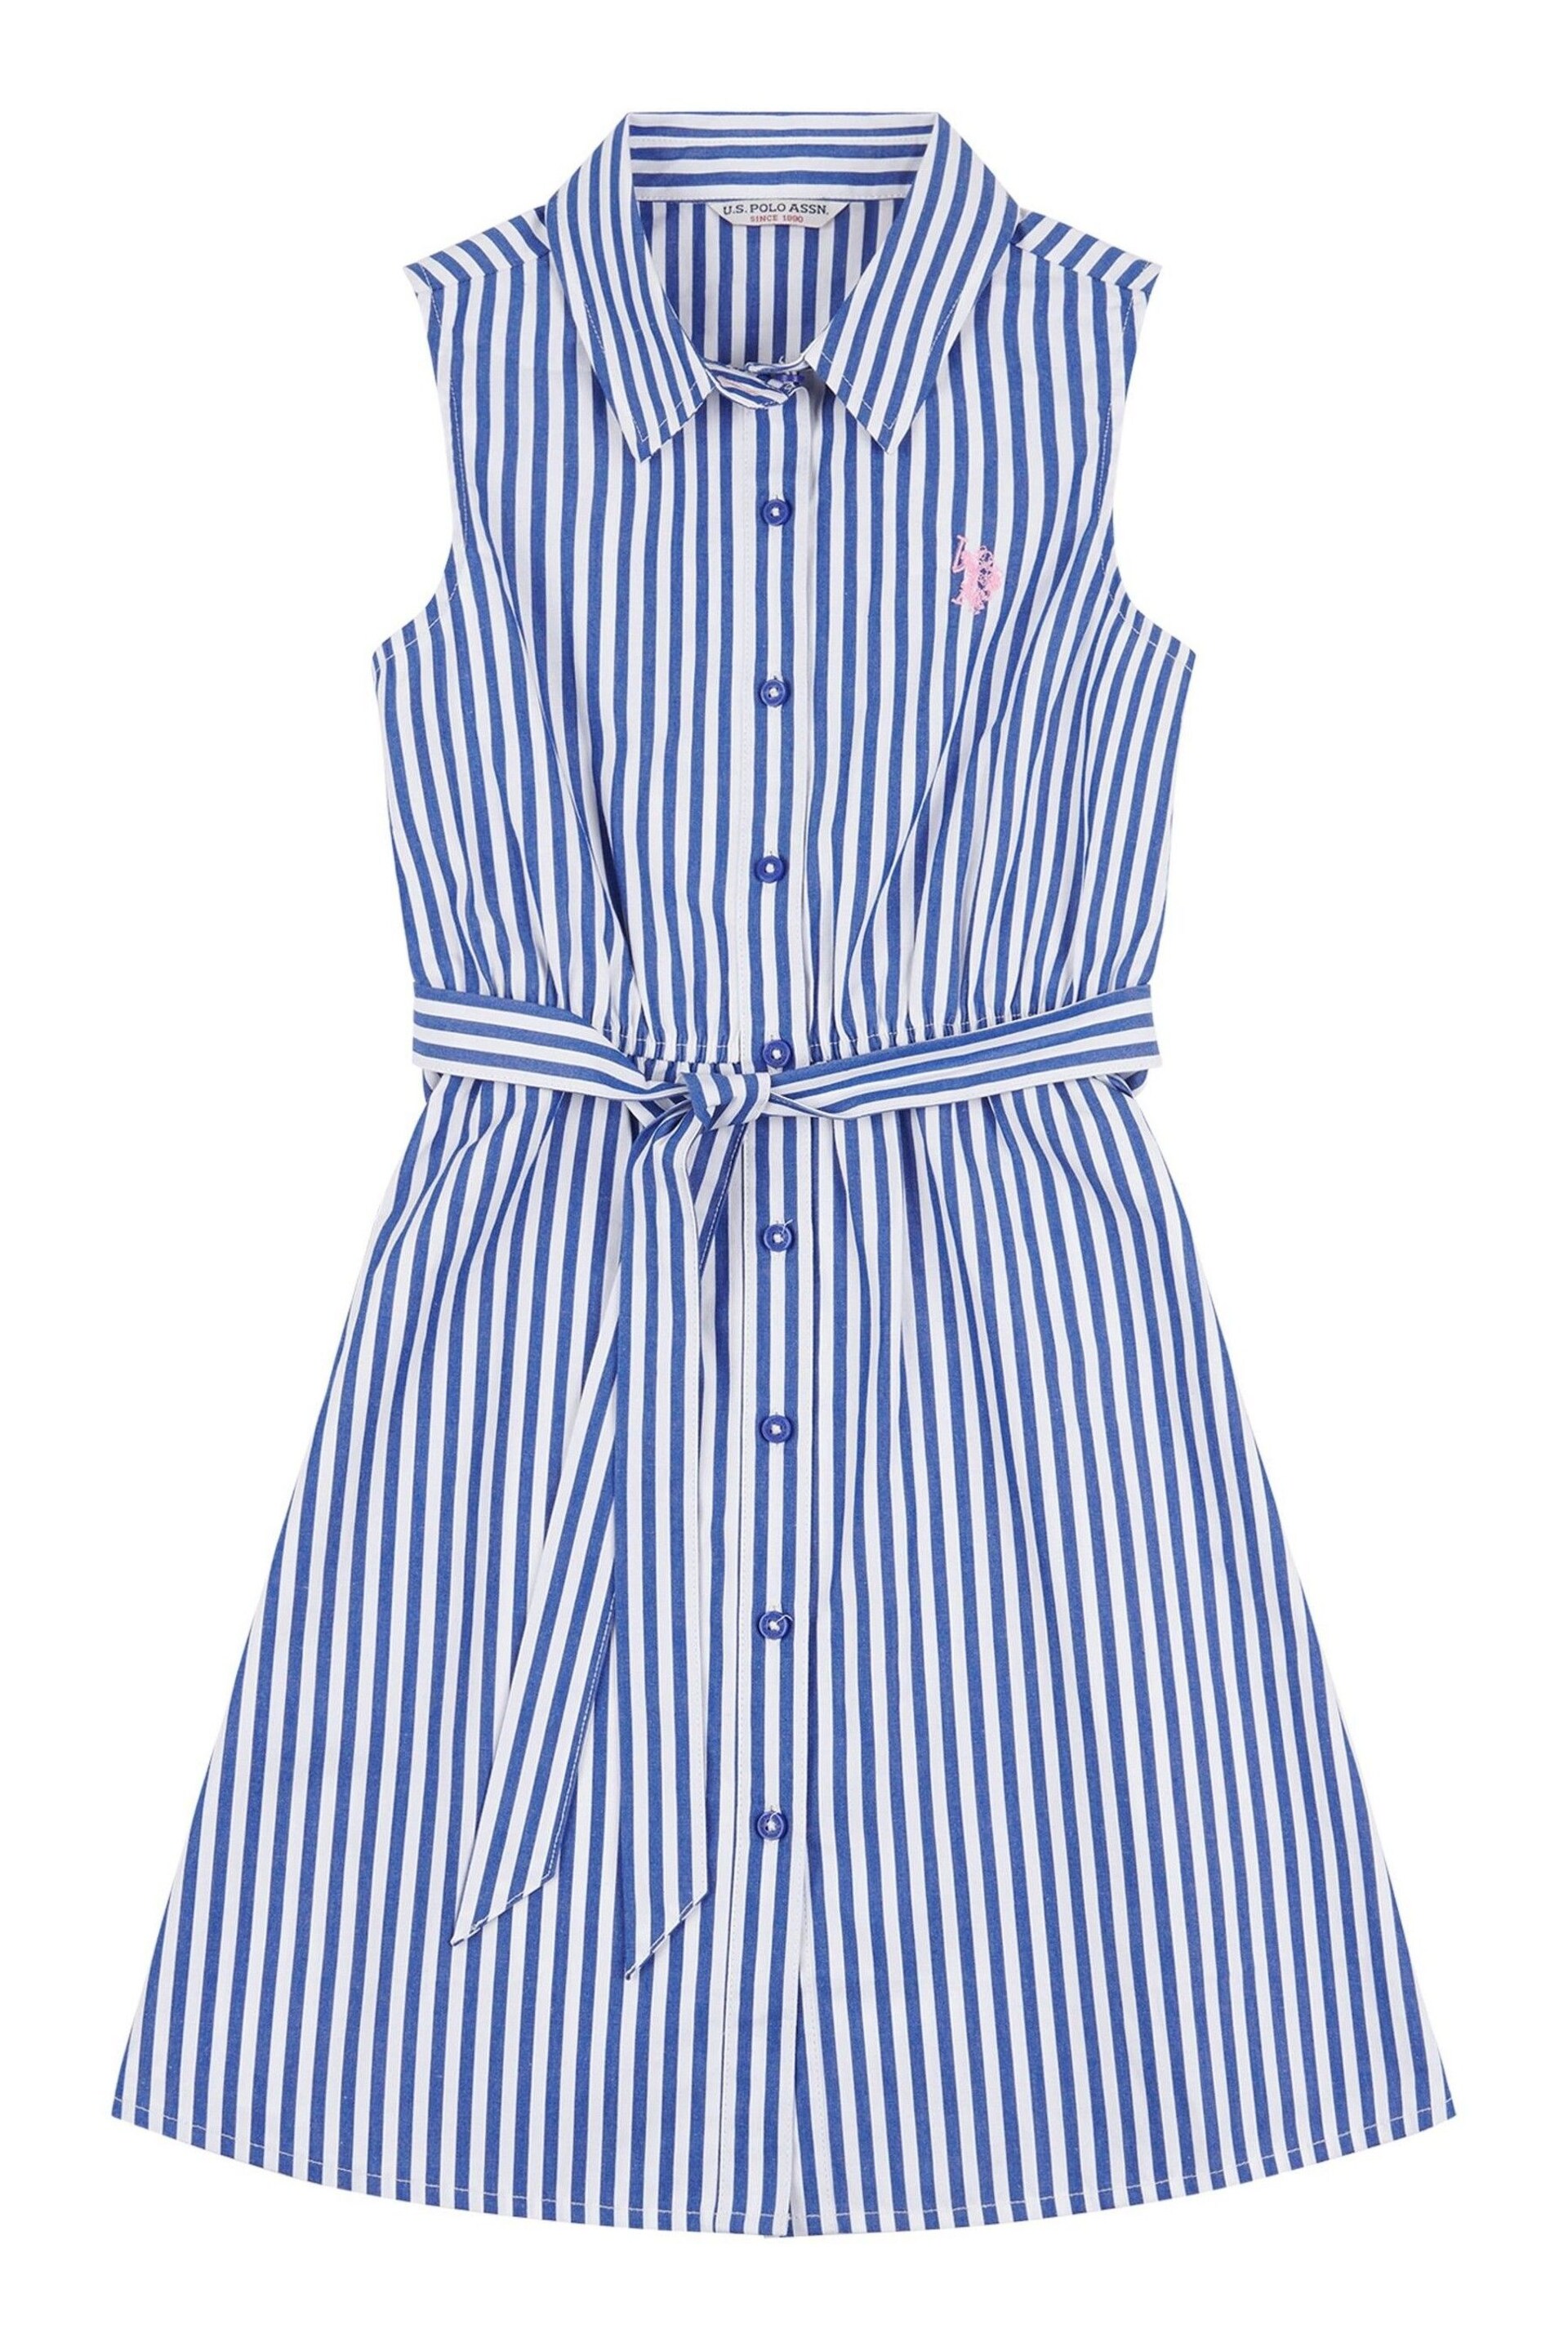 U.S. Polo Assn. Girls Blue Striped Sleeveless Shirt Dress - Image 5 of 6